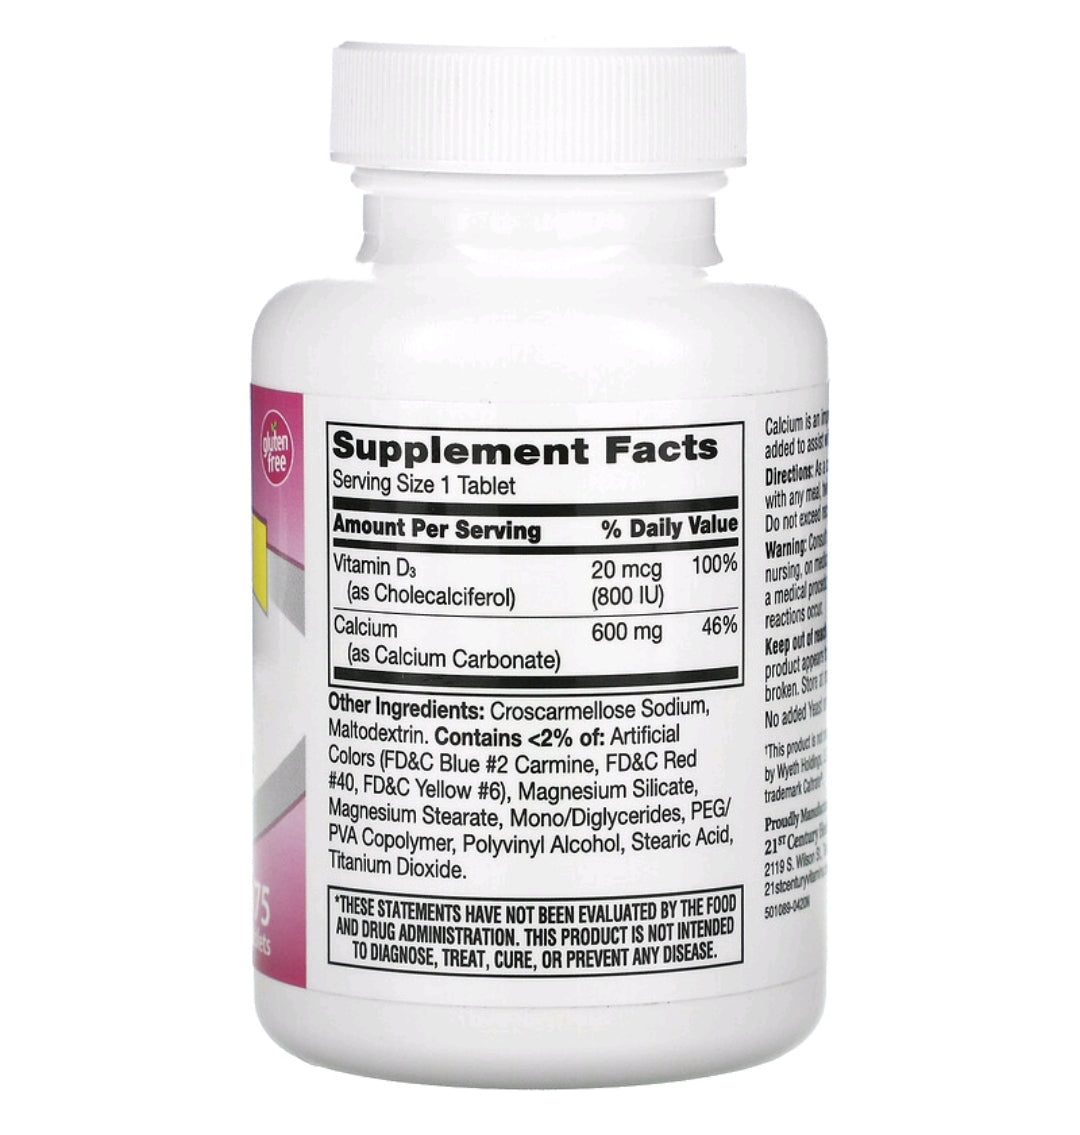 600+D3, Calcium & Vitamin D3 Supplement, 75 Tablets